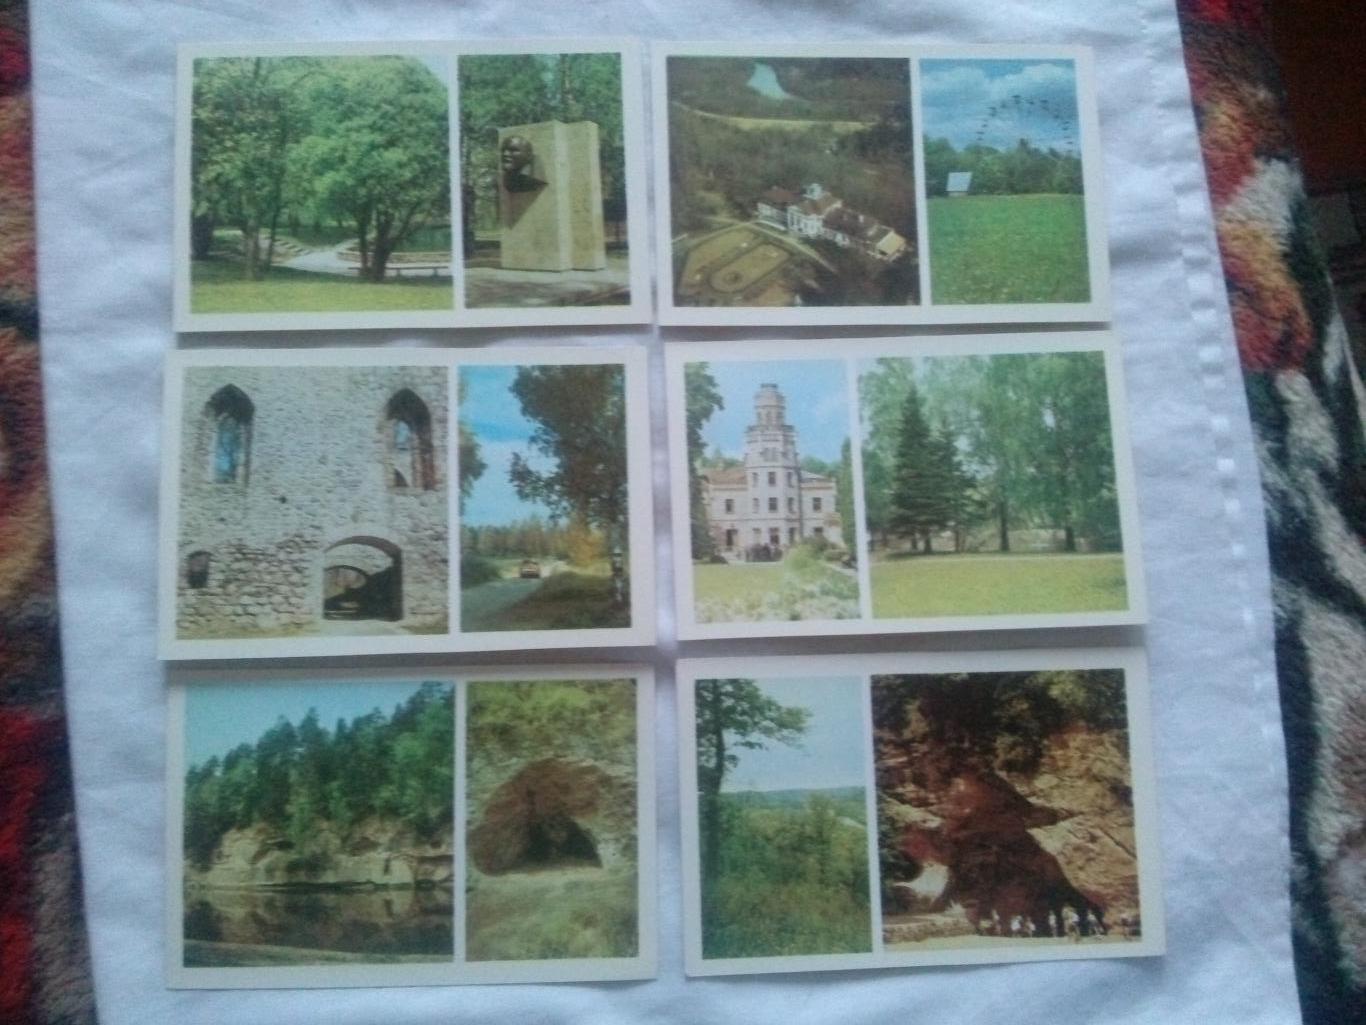 Памятные места СССР : Сигулда (Sigulda) 1984 г. полный набор- 18 открыток Латвия 5